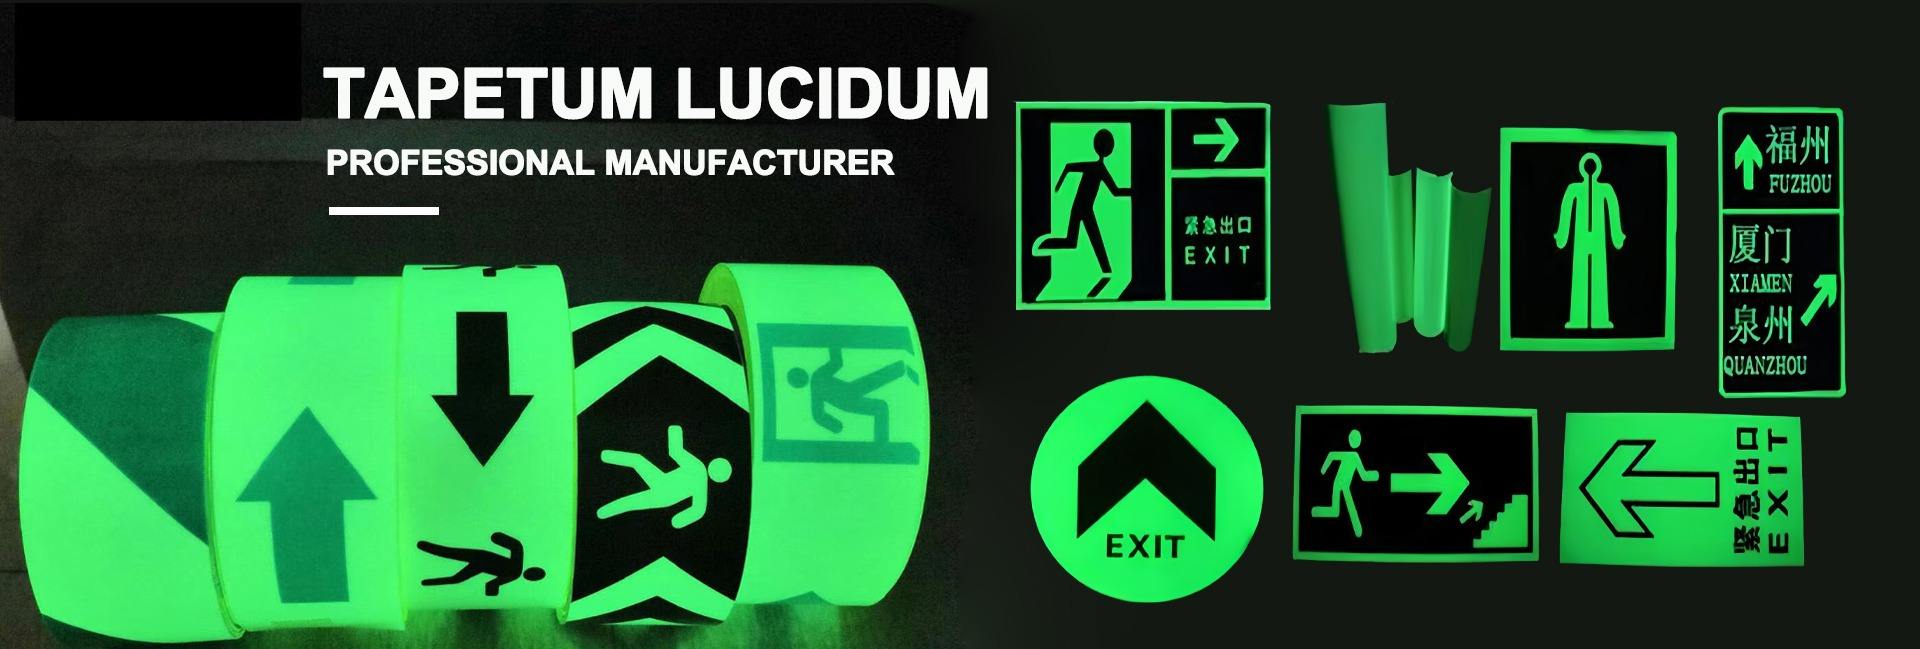 Tapetum Lucidum Manufacturer